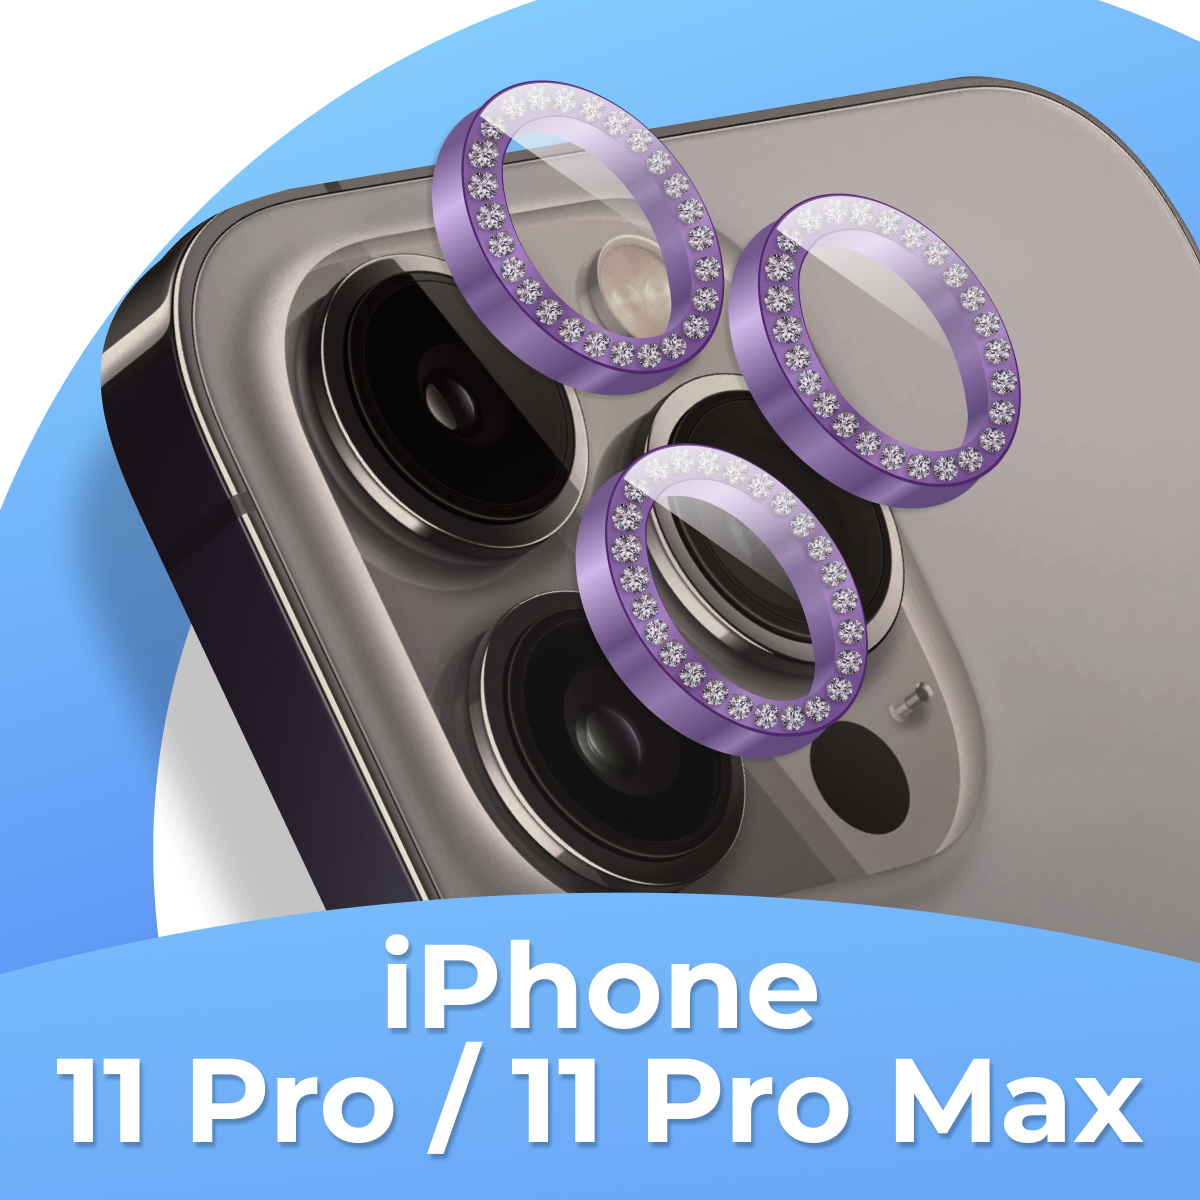 Комплект защитных стекол для камеры Apple iPhone 11 Pro и 11 Pro Max / Линзы на камеру Эпл Айфон 11 Про и 11 Про Макс со стразами / Темно-фиолетовый